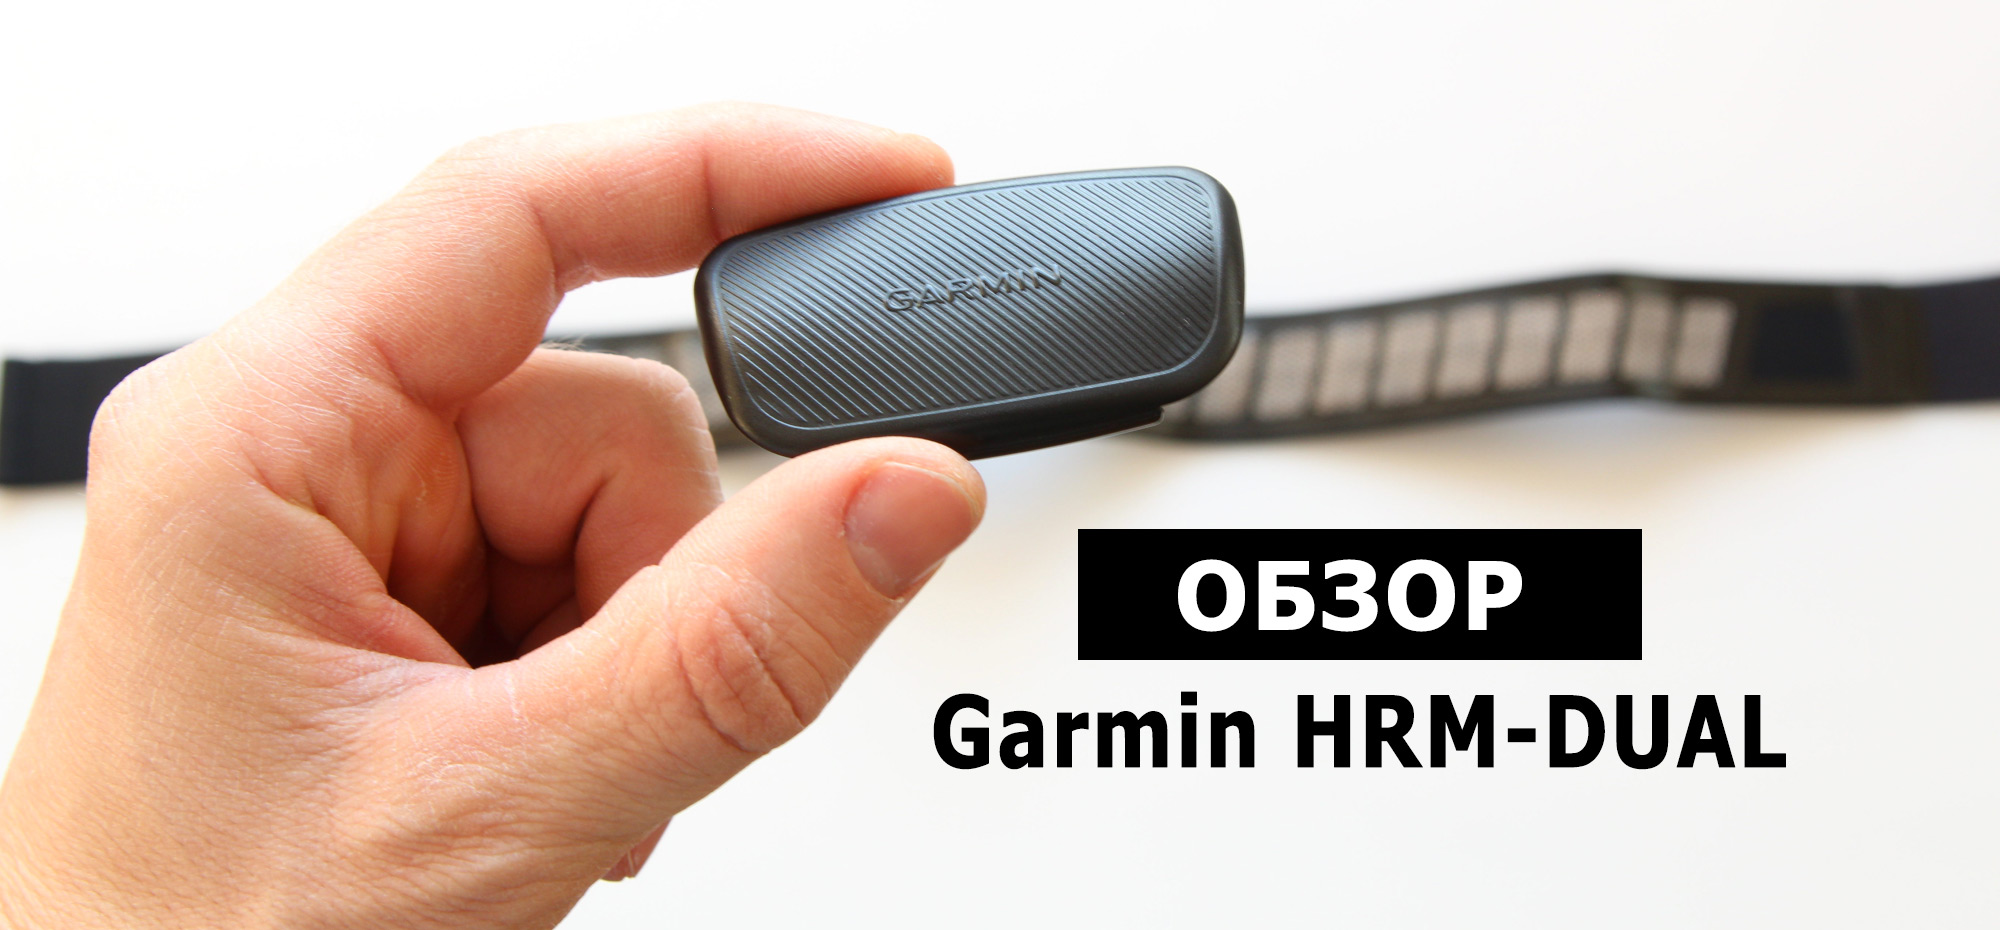 Garmin-HRM-Dual - обзор нового кардио-датчика